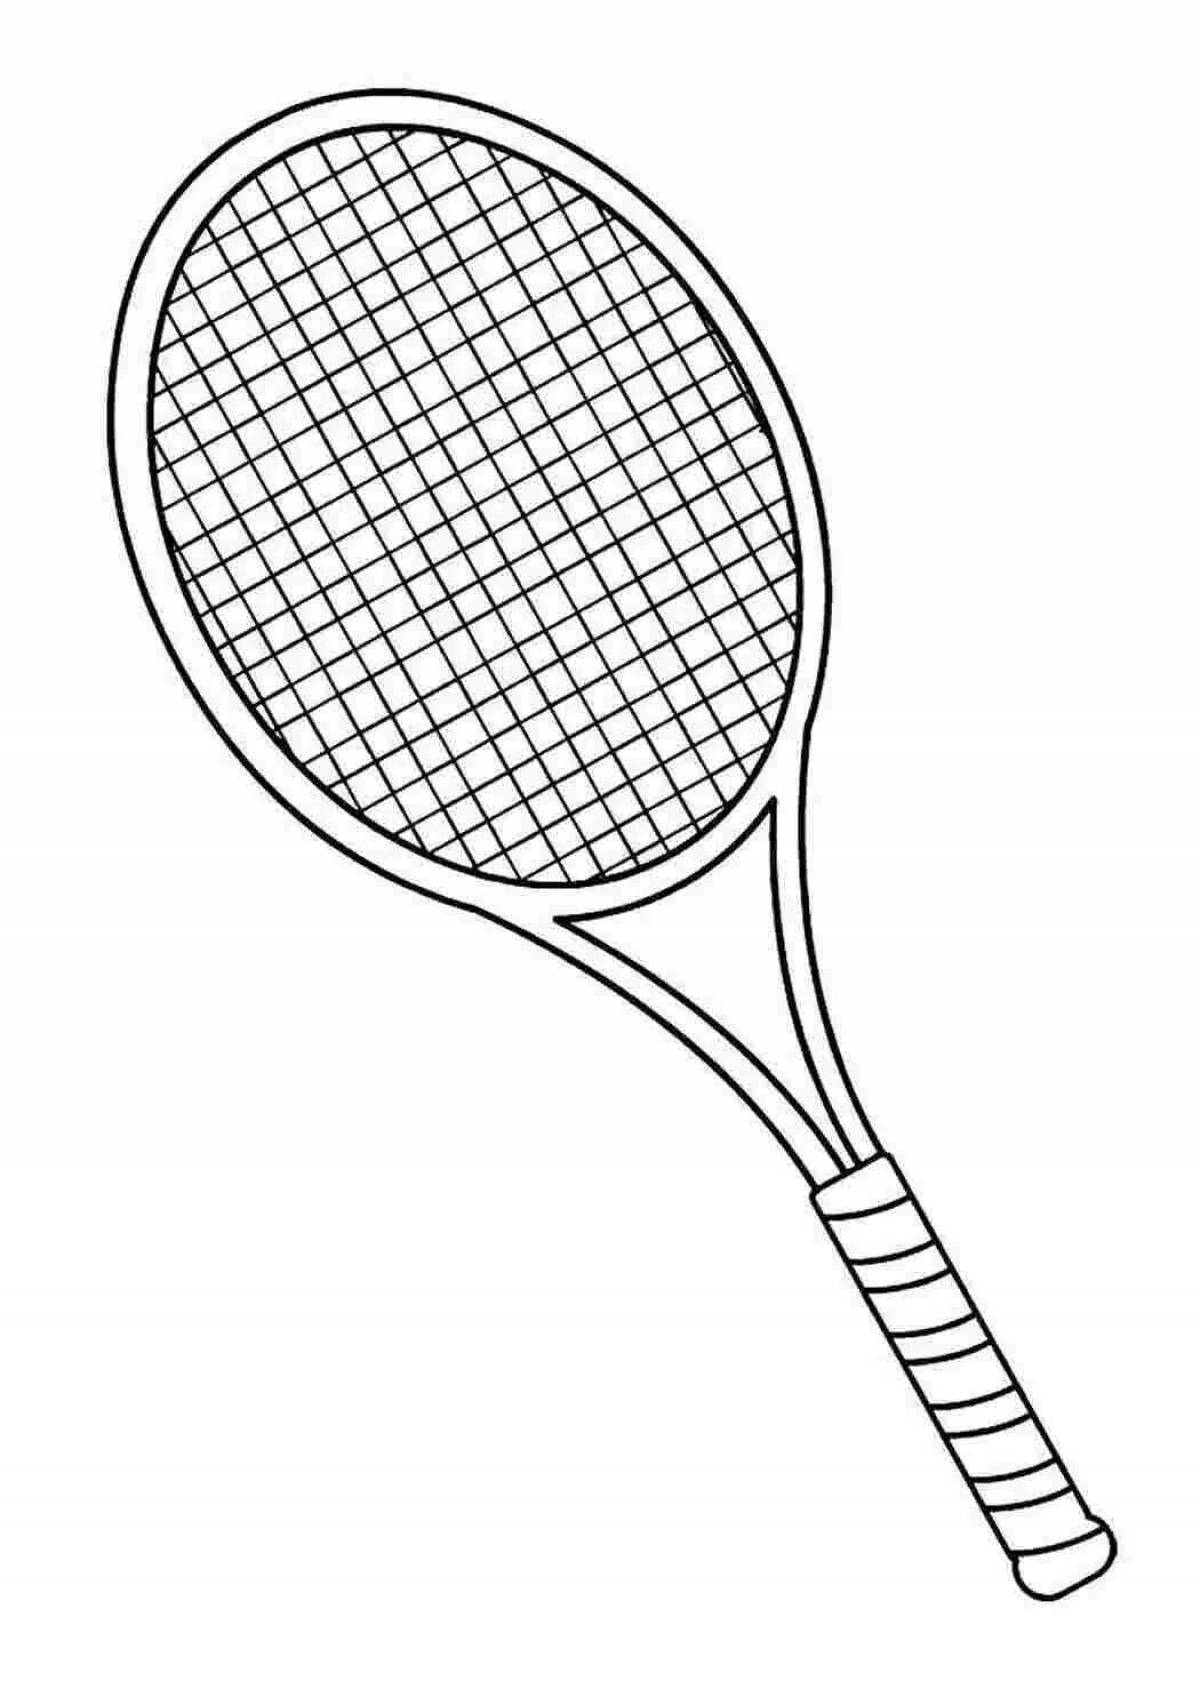 Adorable tennis racket coloring book